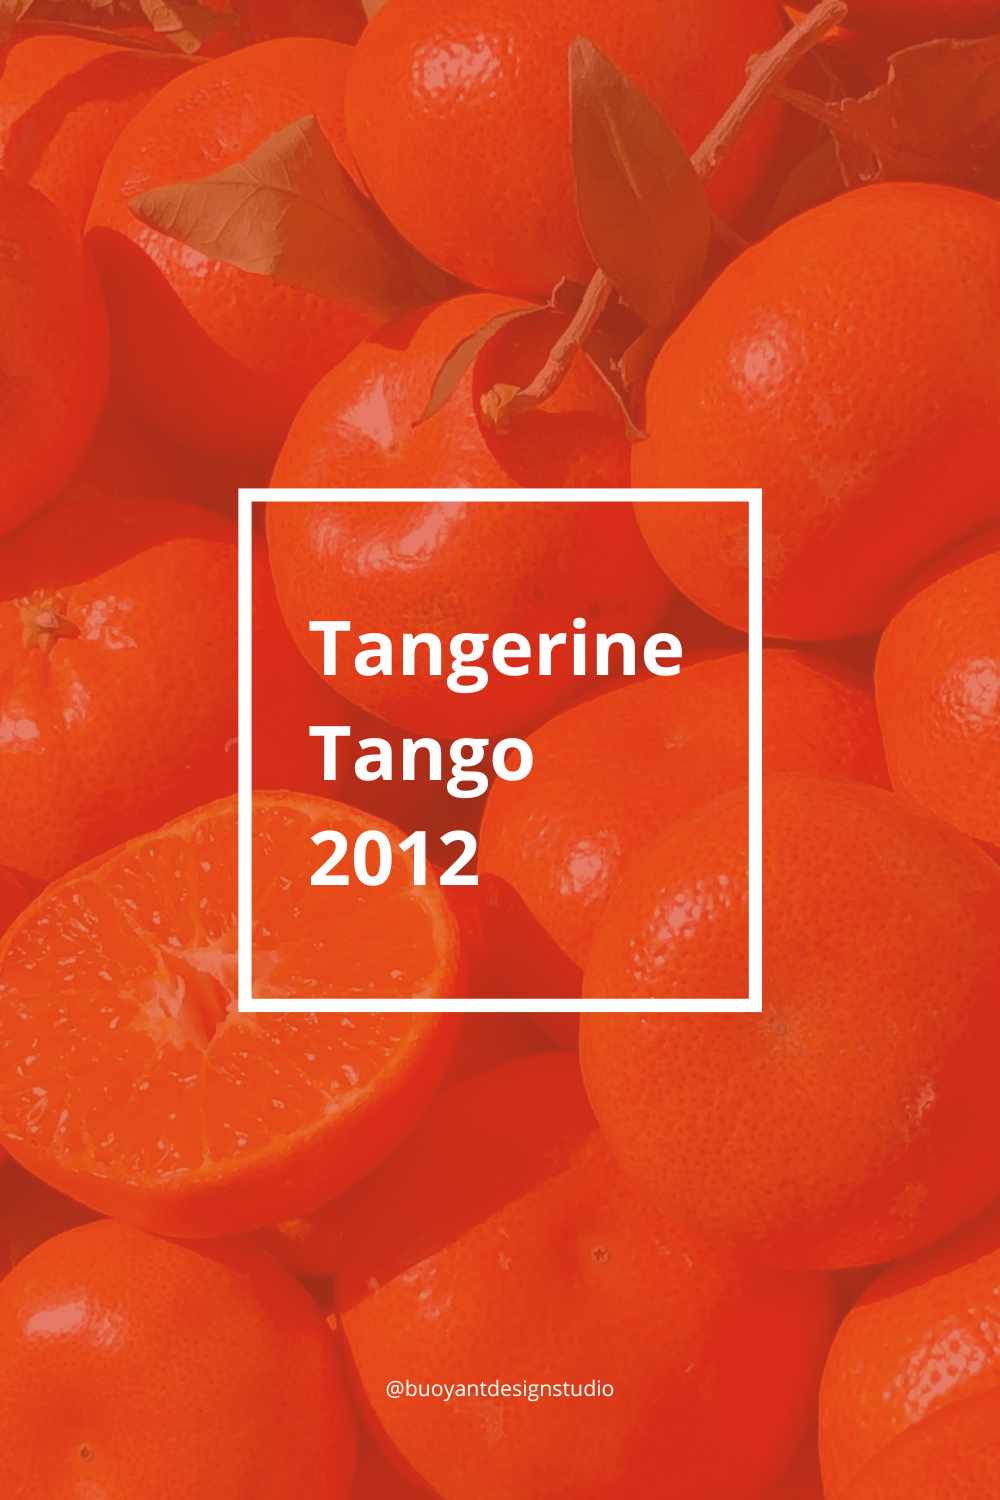 Tangerine Tango 2012